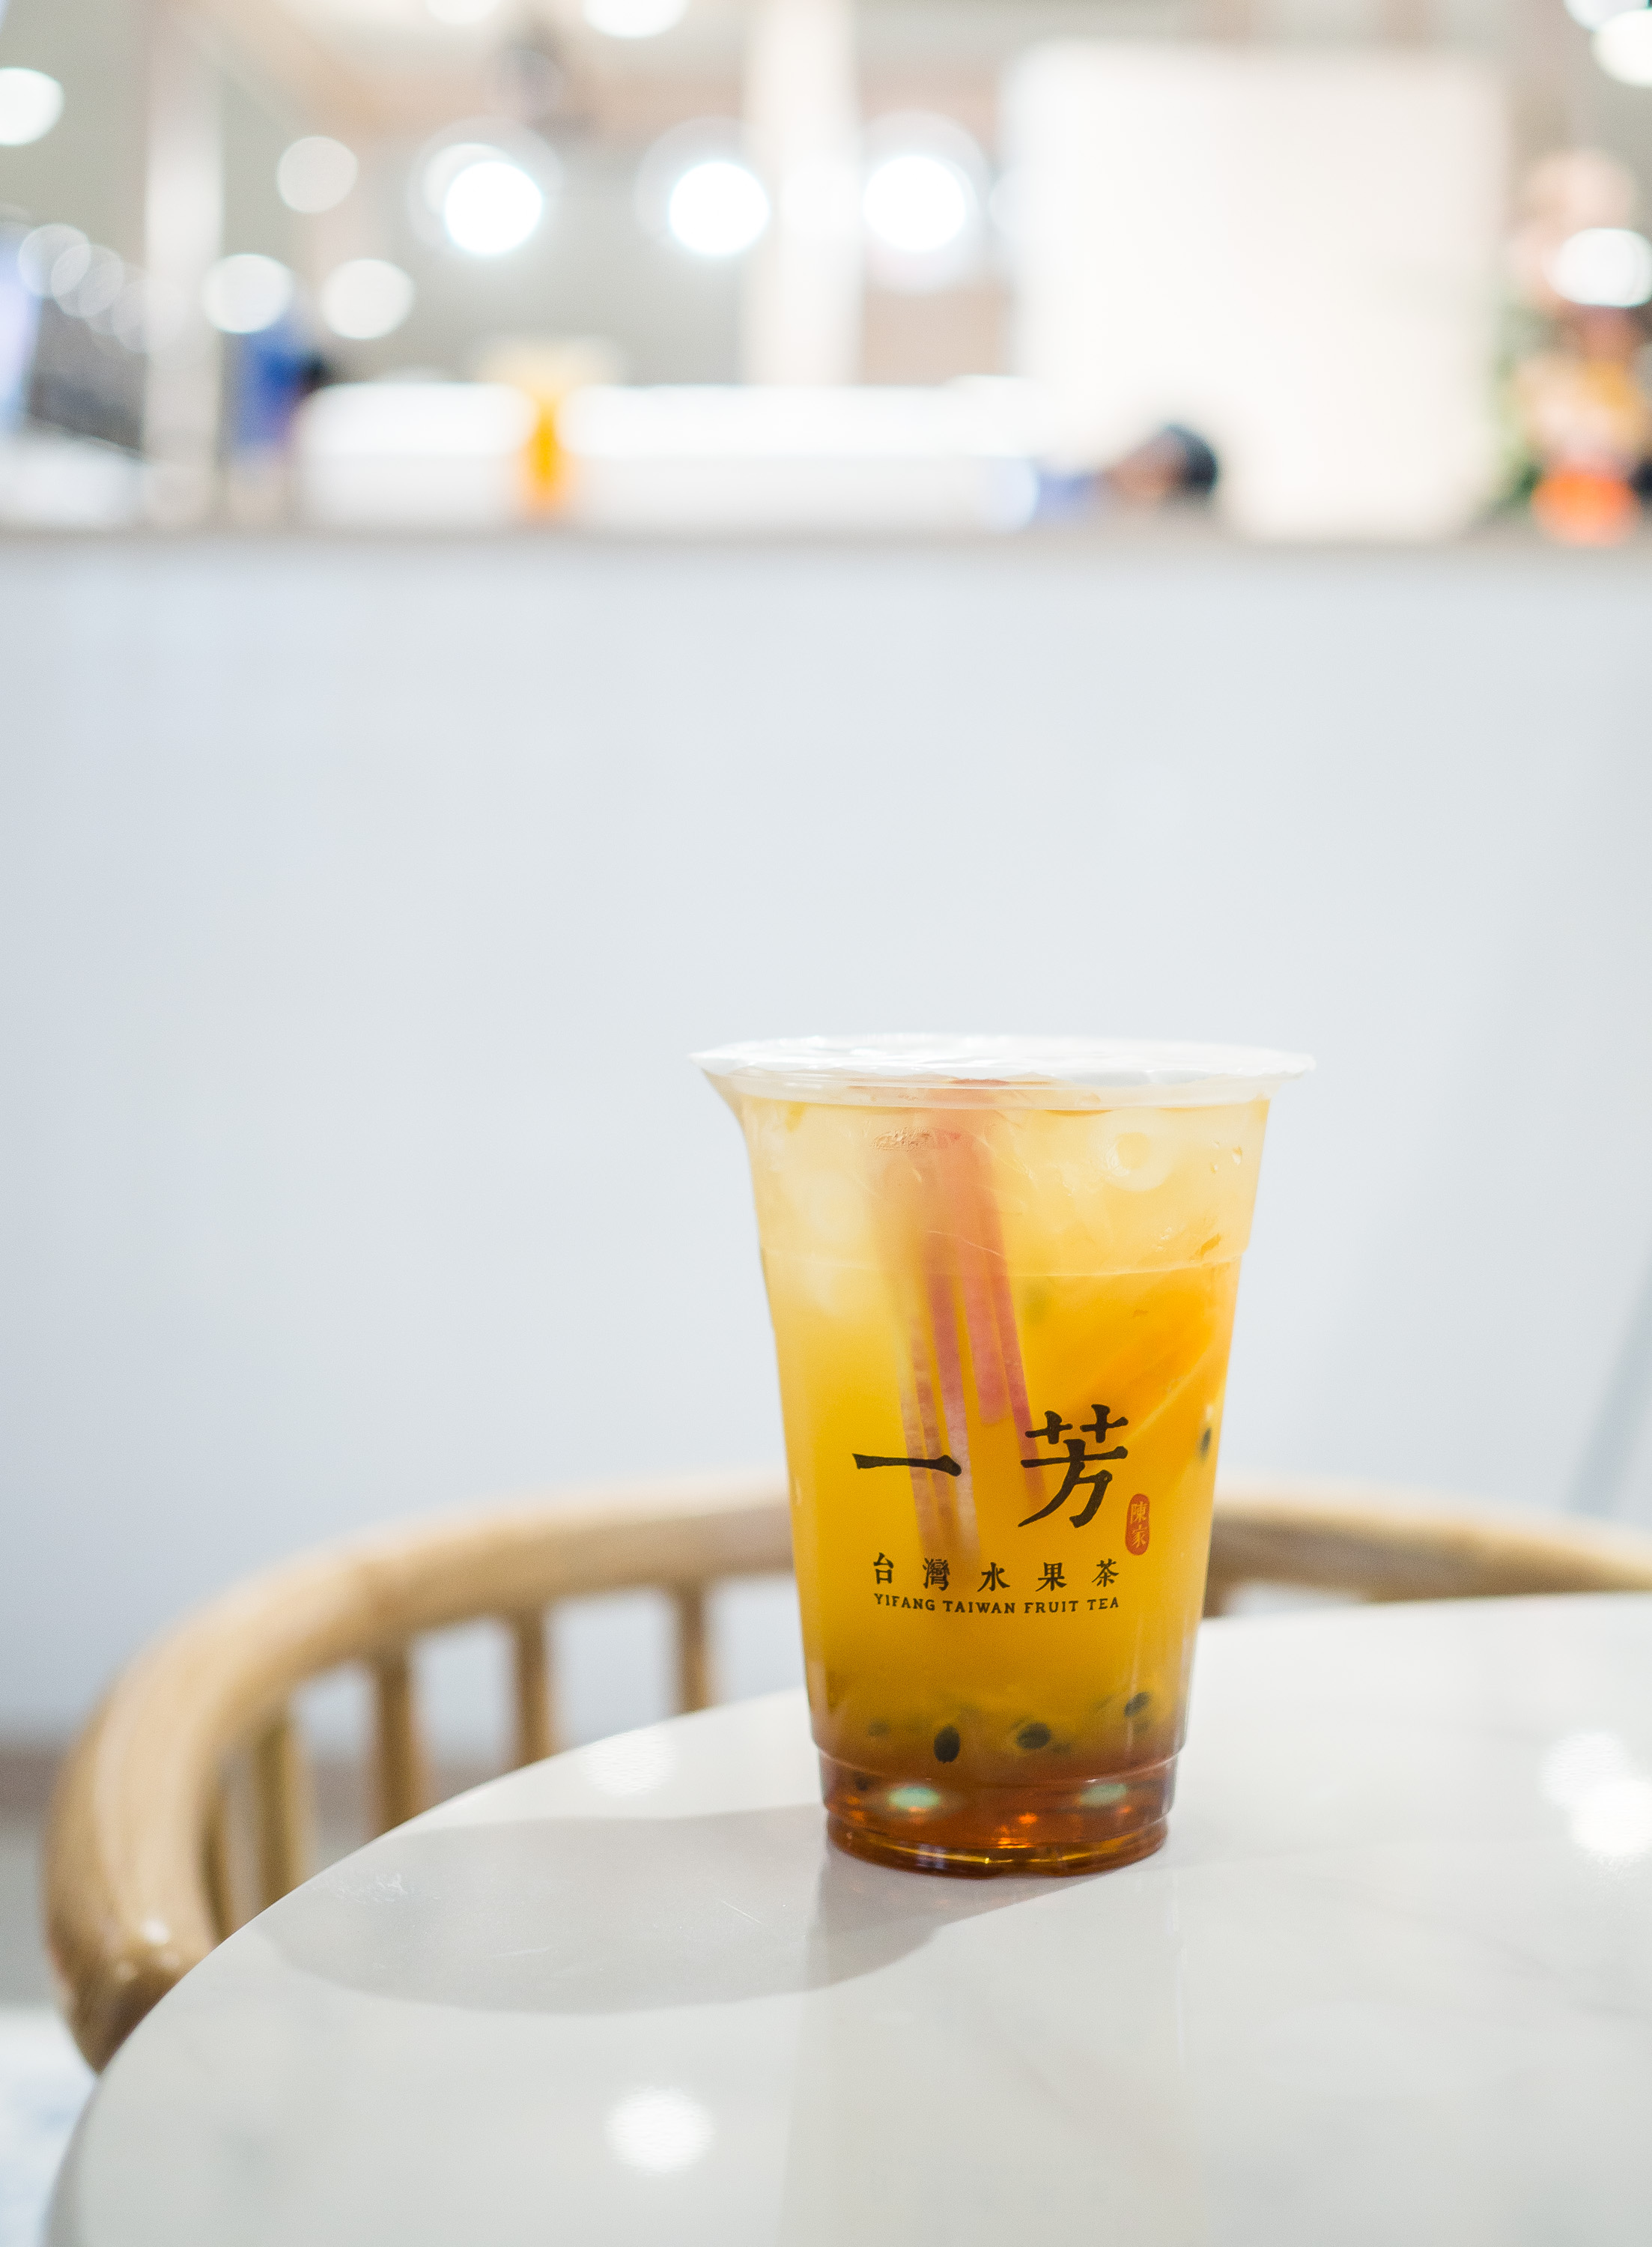 Tea: A kínai teaszertartás: Gong fu Cha